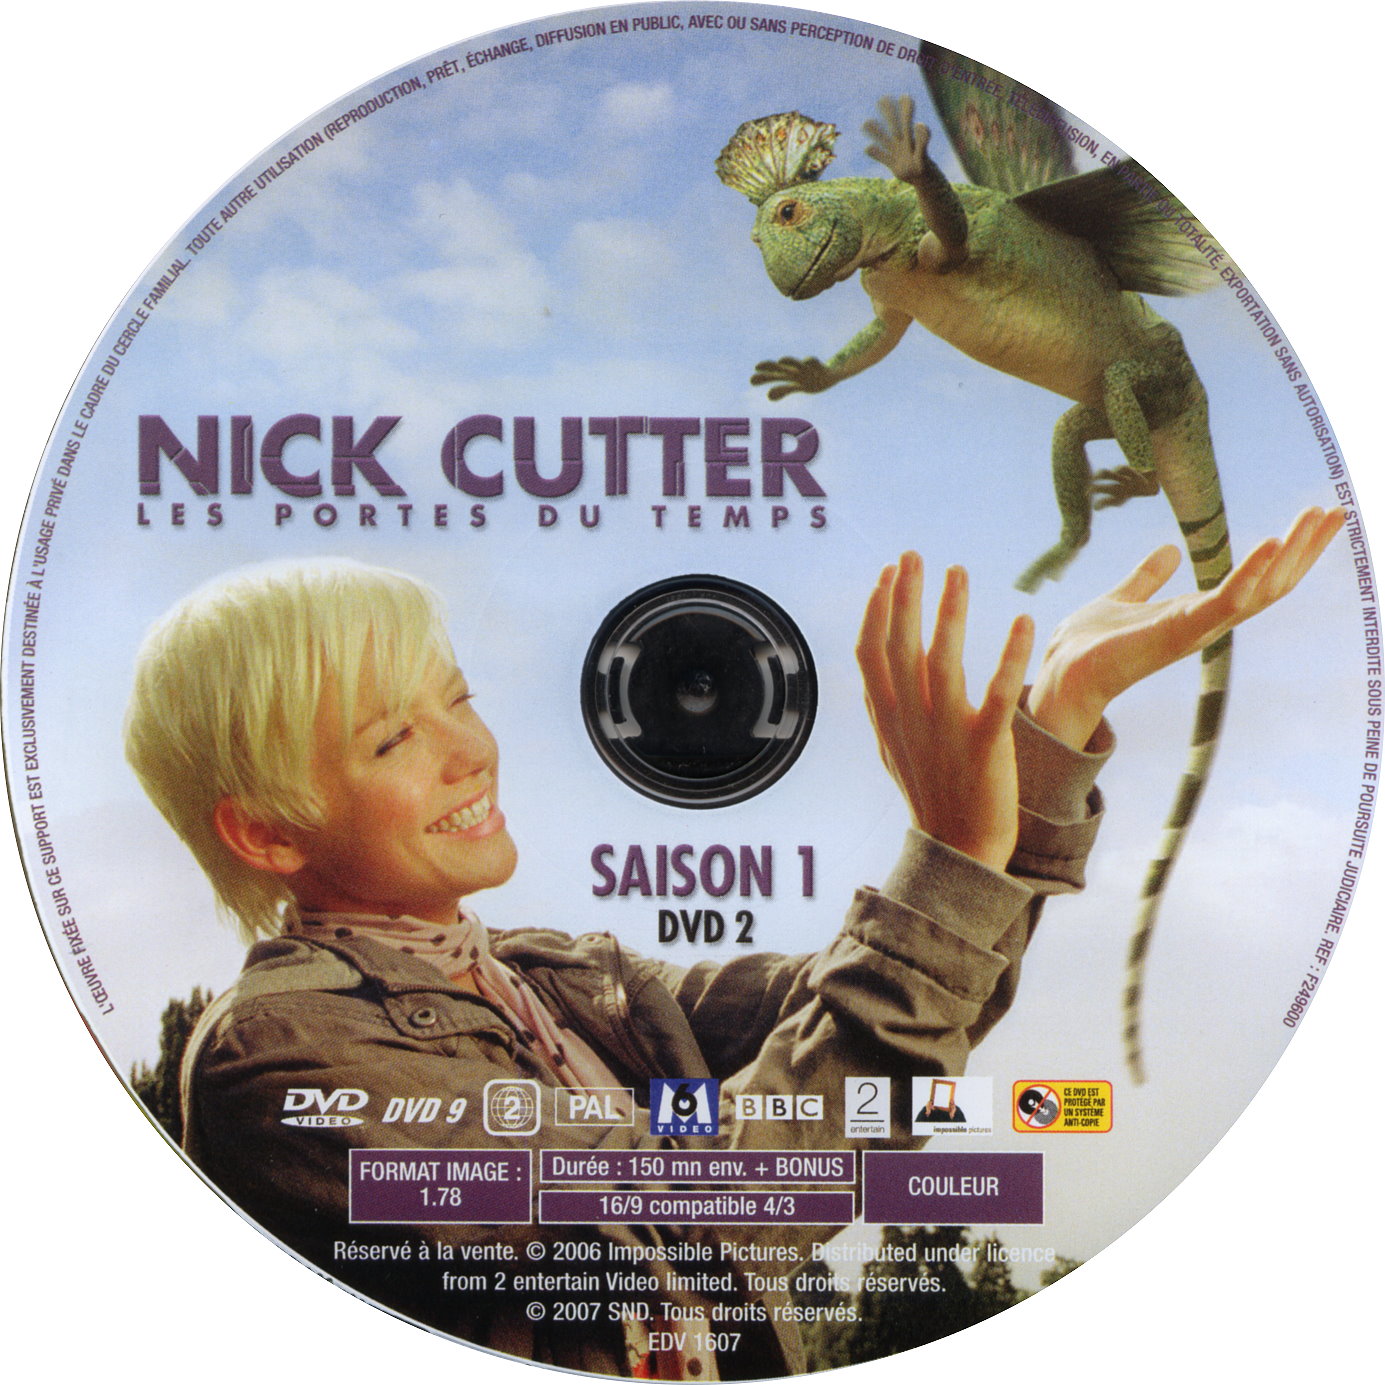 Nick Cutter Les portes du temps Saison 1 DISC 2